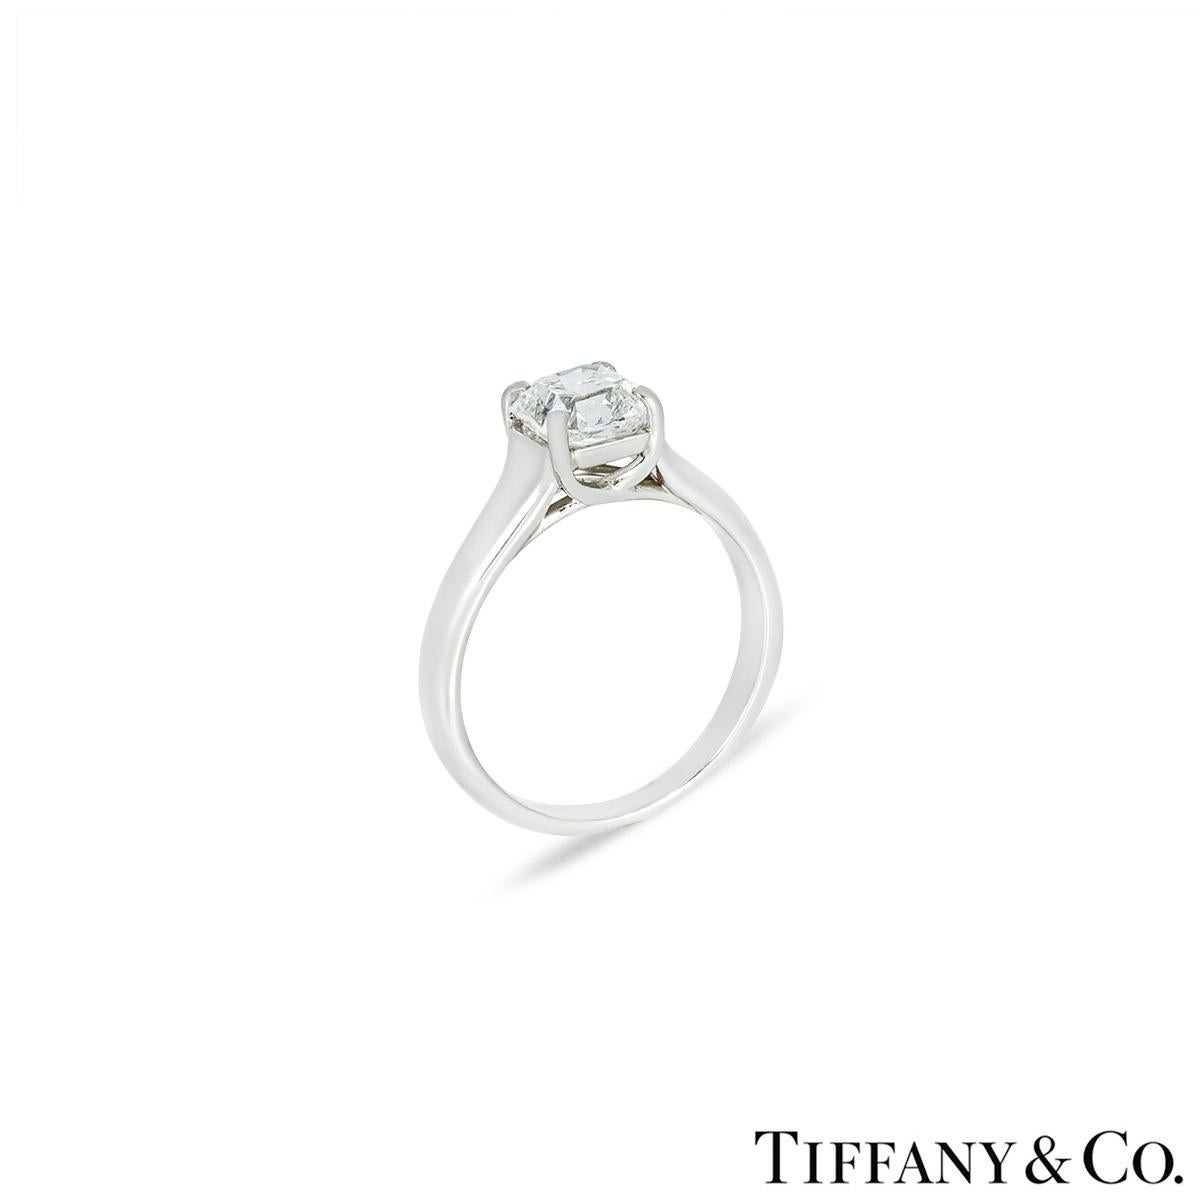 Une superbe bague en platine à diamants Tiffany & Co. de la collection Lucida. La bague comprend un diamant de taille Lucida dans une monture à 4 griffes, d'un poids de 1,52ct, de couleur G et de pureté VVS1. La bague mesure 4,6 mm de large et se